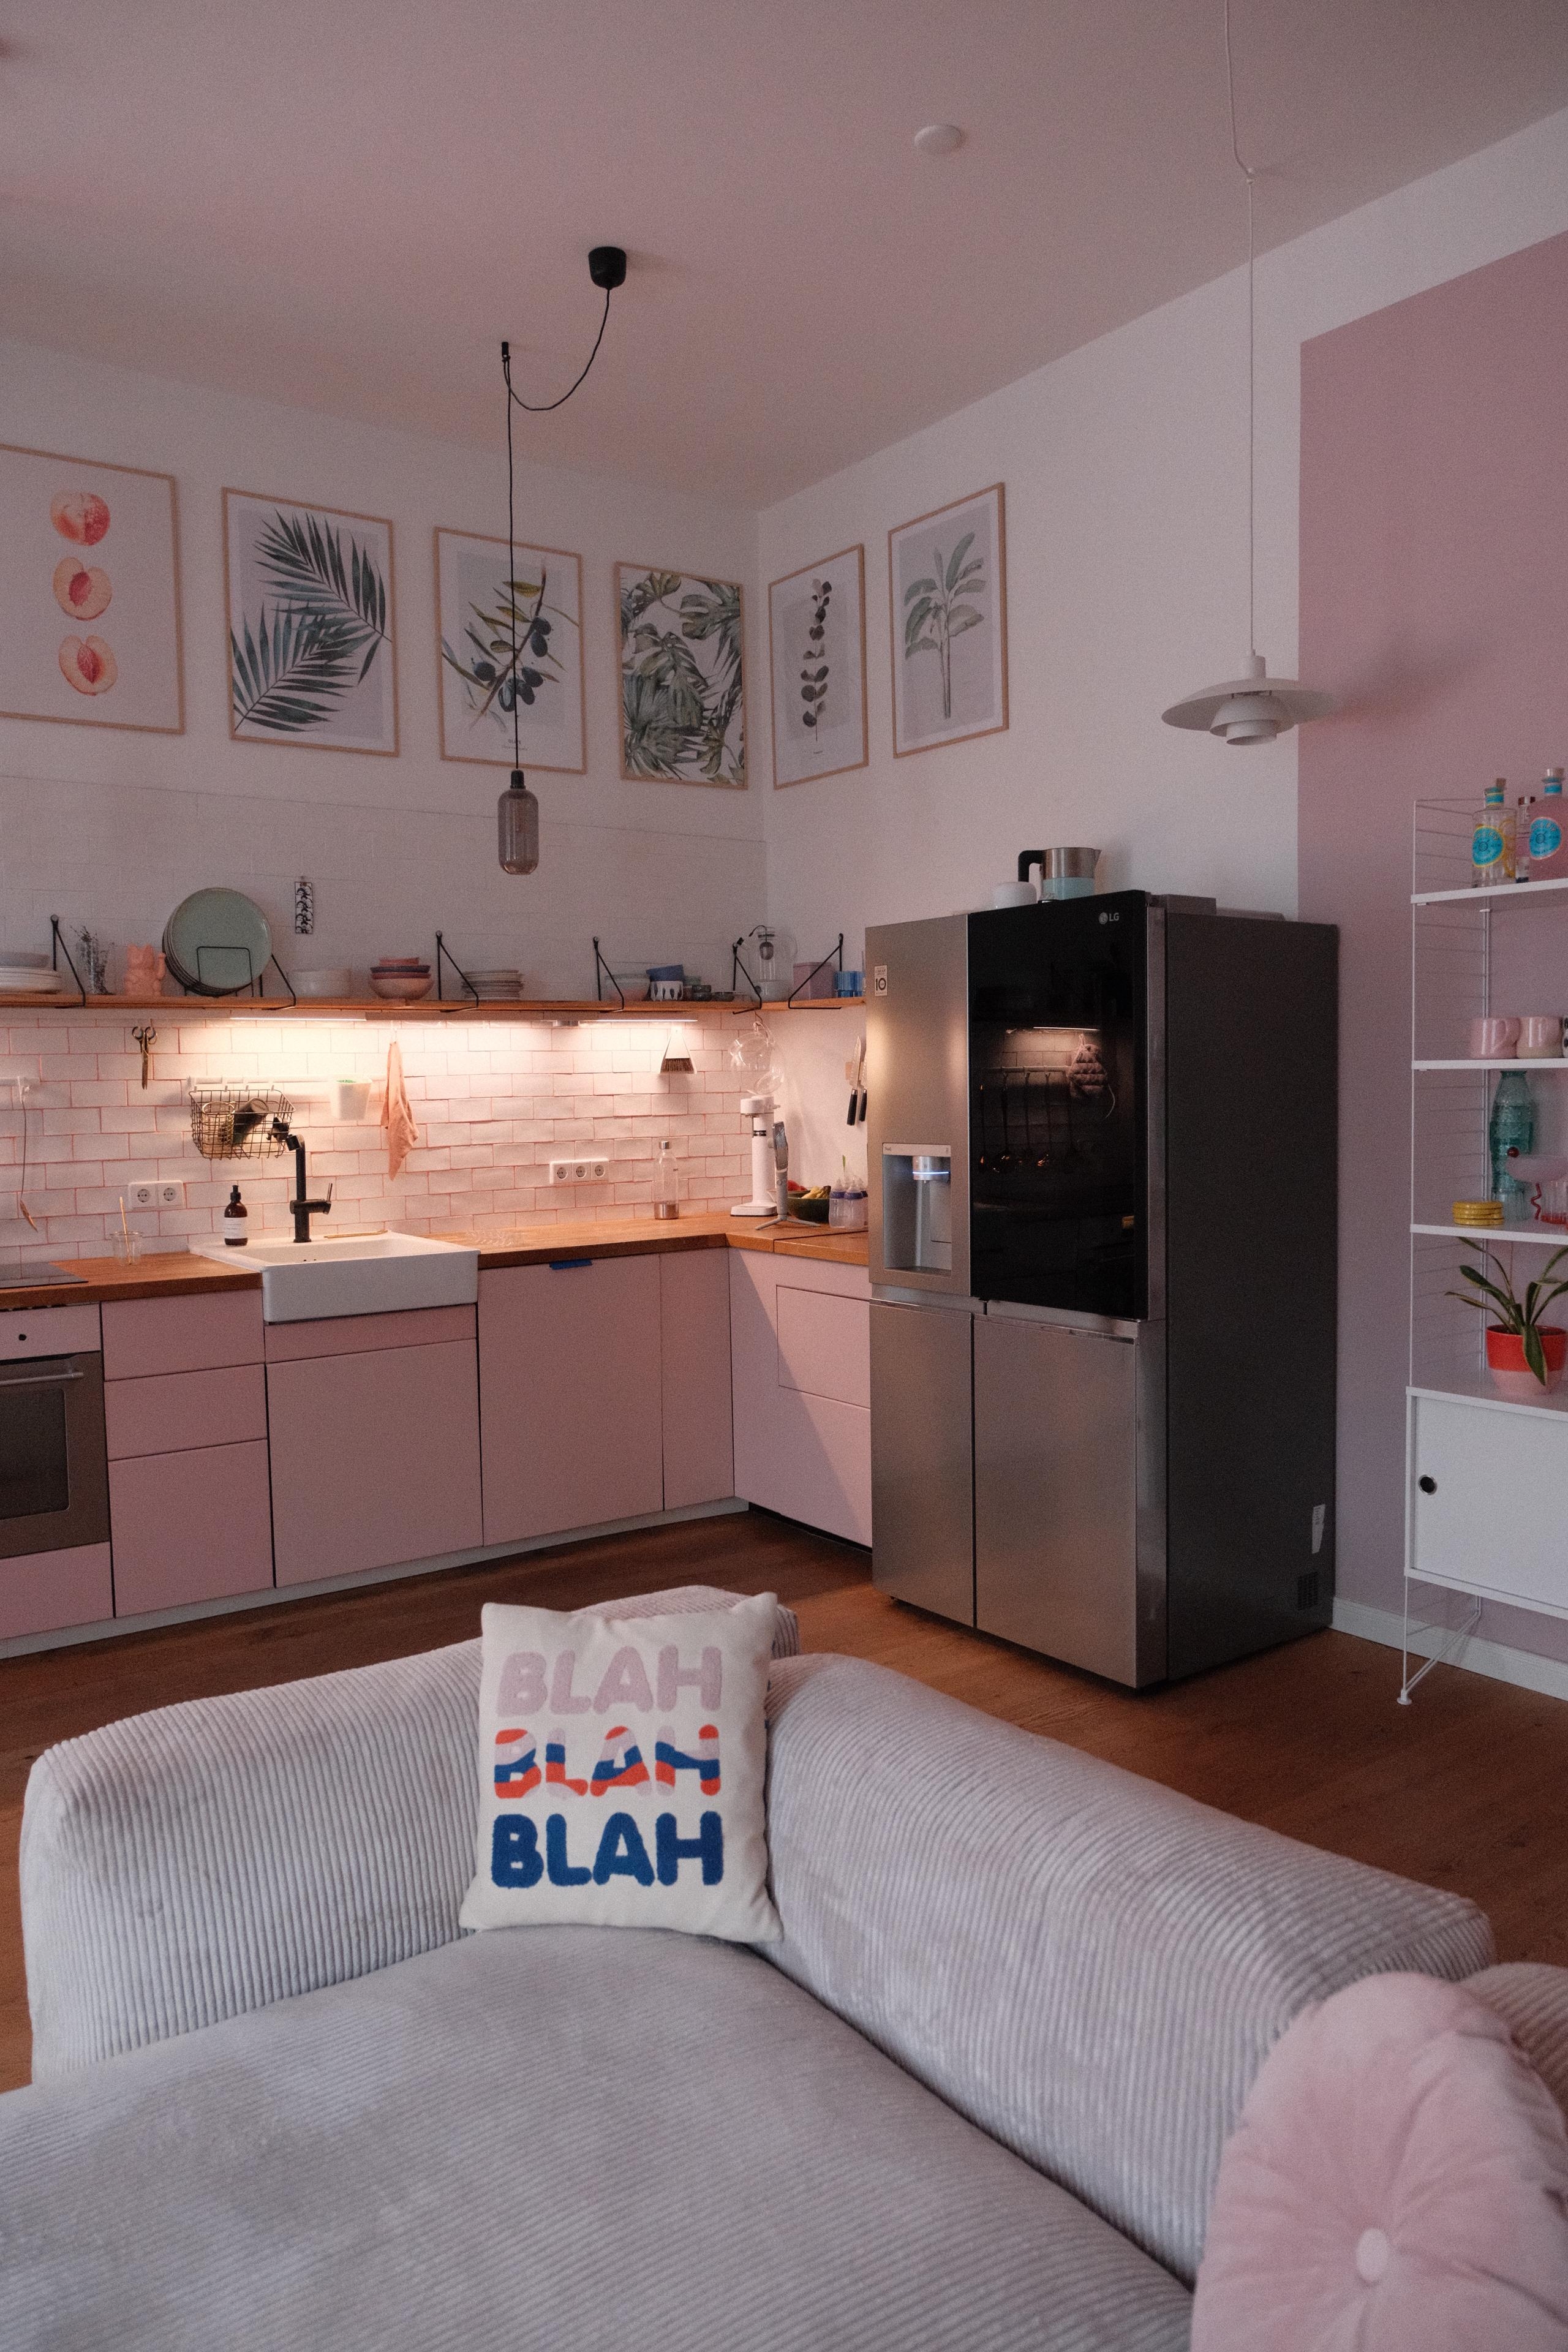 #wohnküche #altbauwohnung #couchliebt #gemütlich #farbenfroh #küche #sofa #kühlschrank #rosa #bildergalerie #posterwall